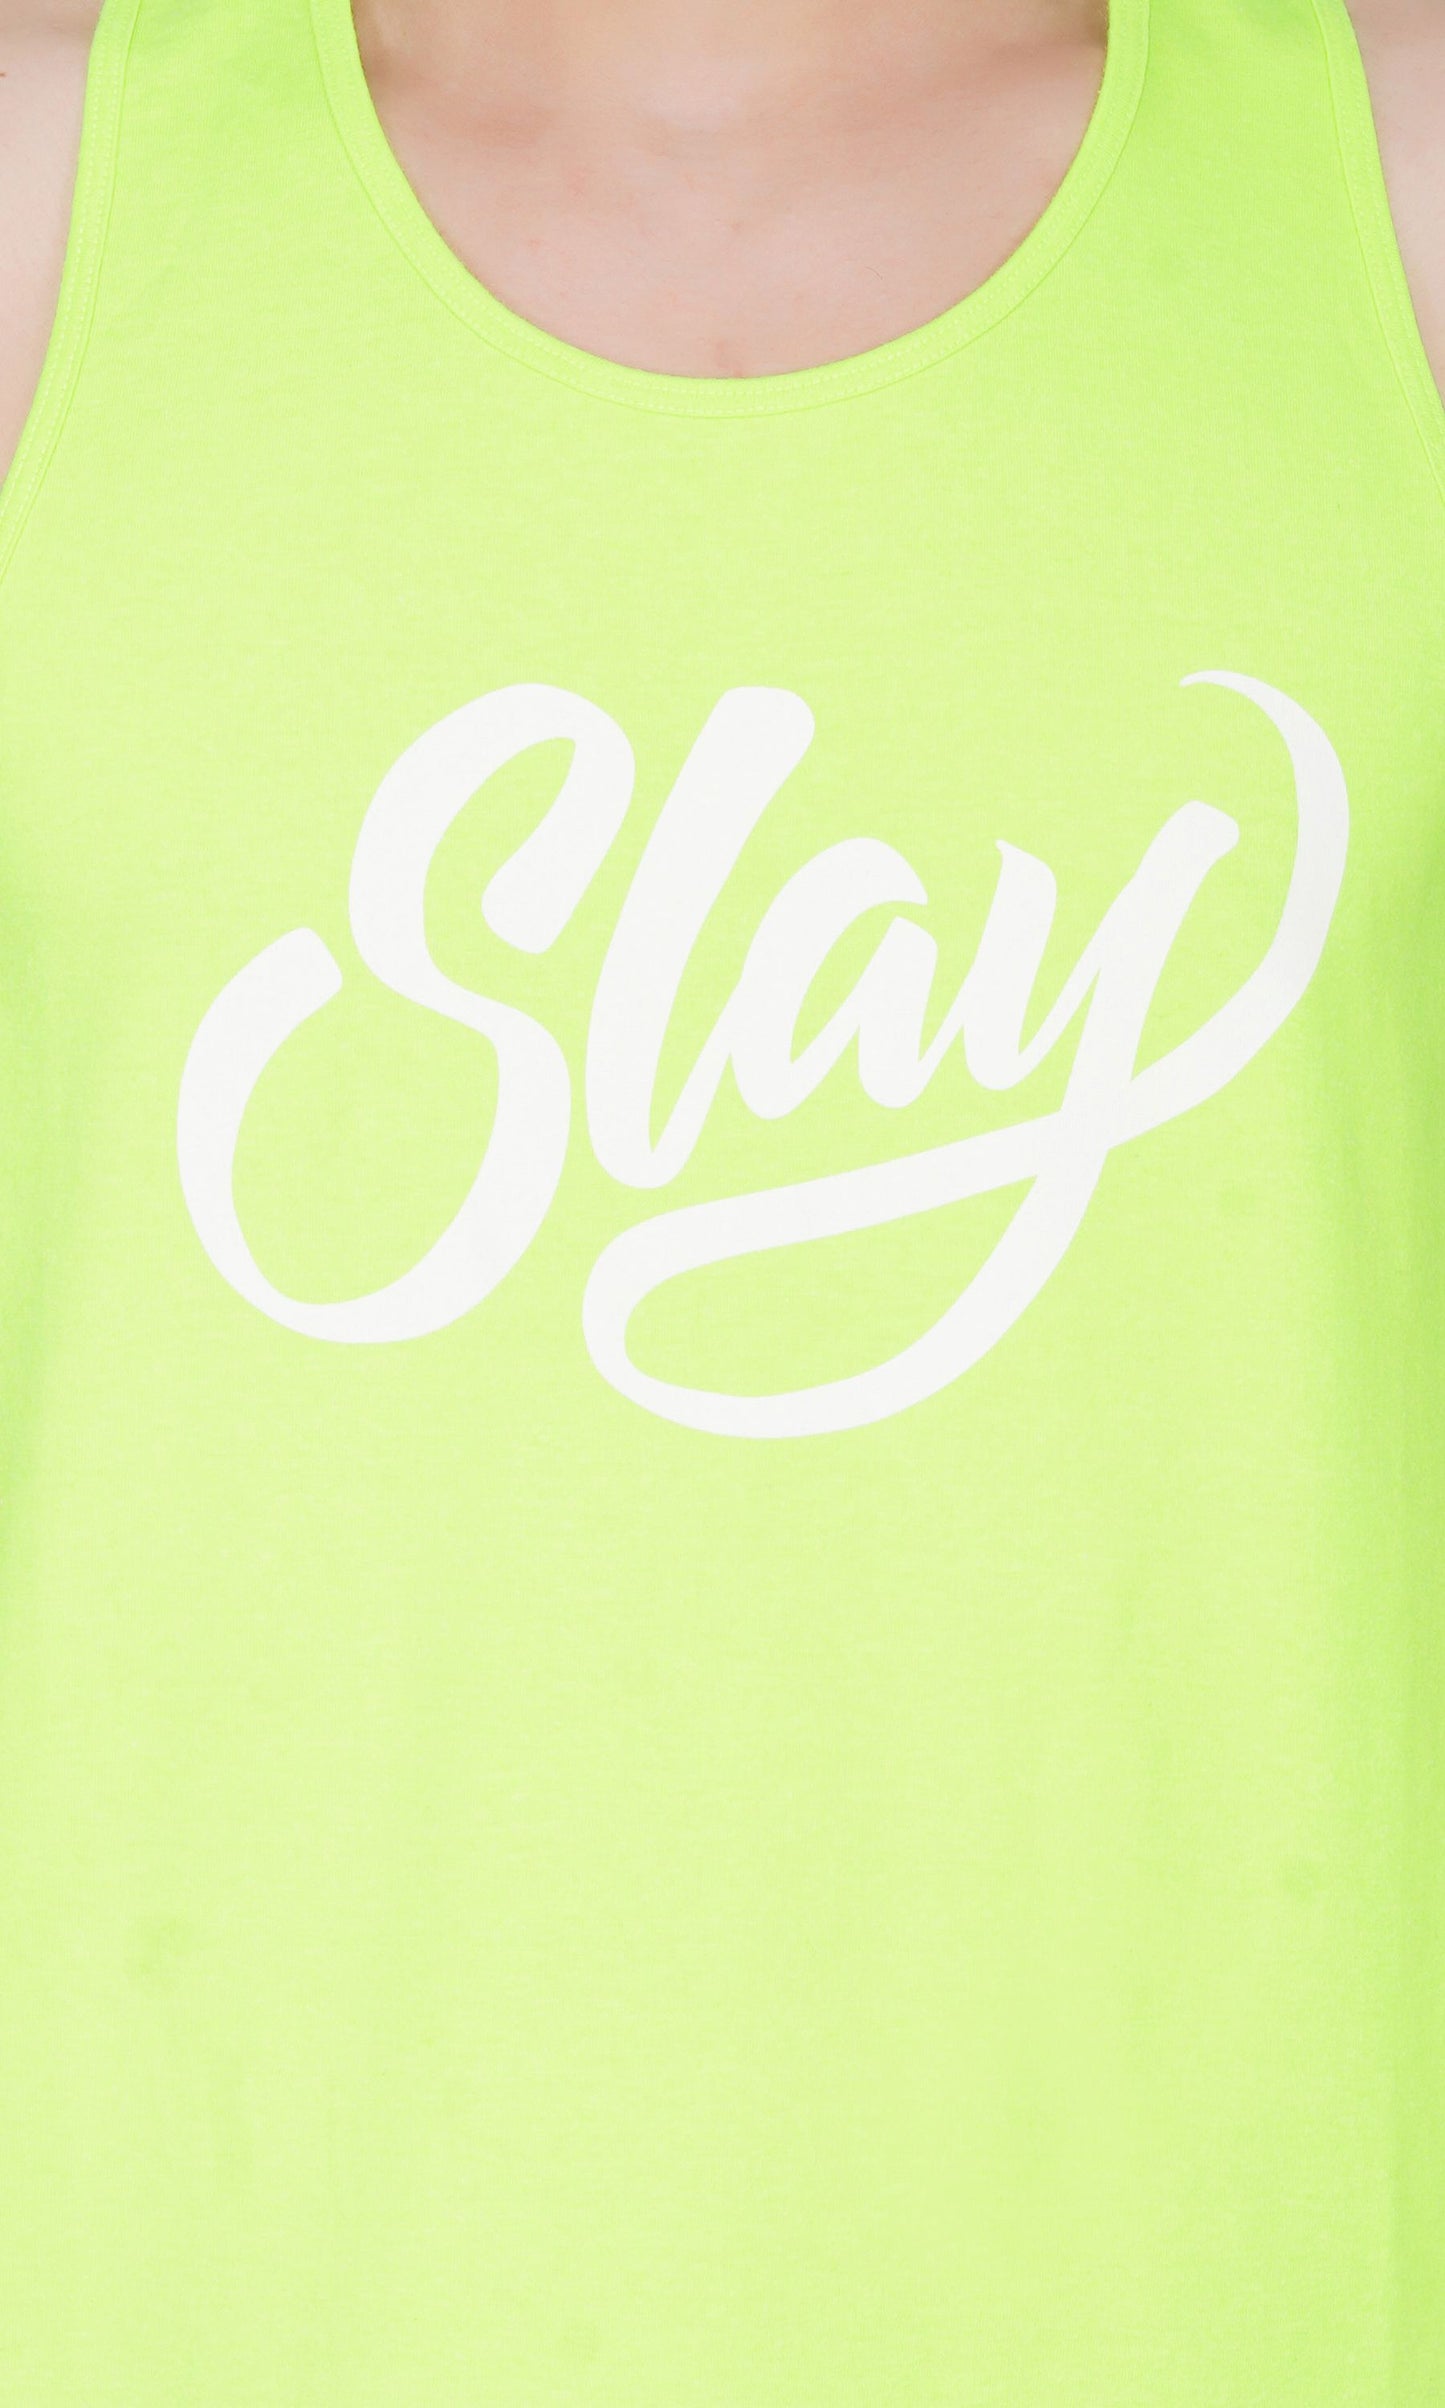 SLAY. Sport Men's Printed Neon Green Gym Vest-clothing-to-slay.myshopify.com-Vest